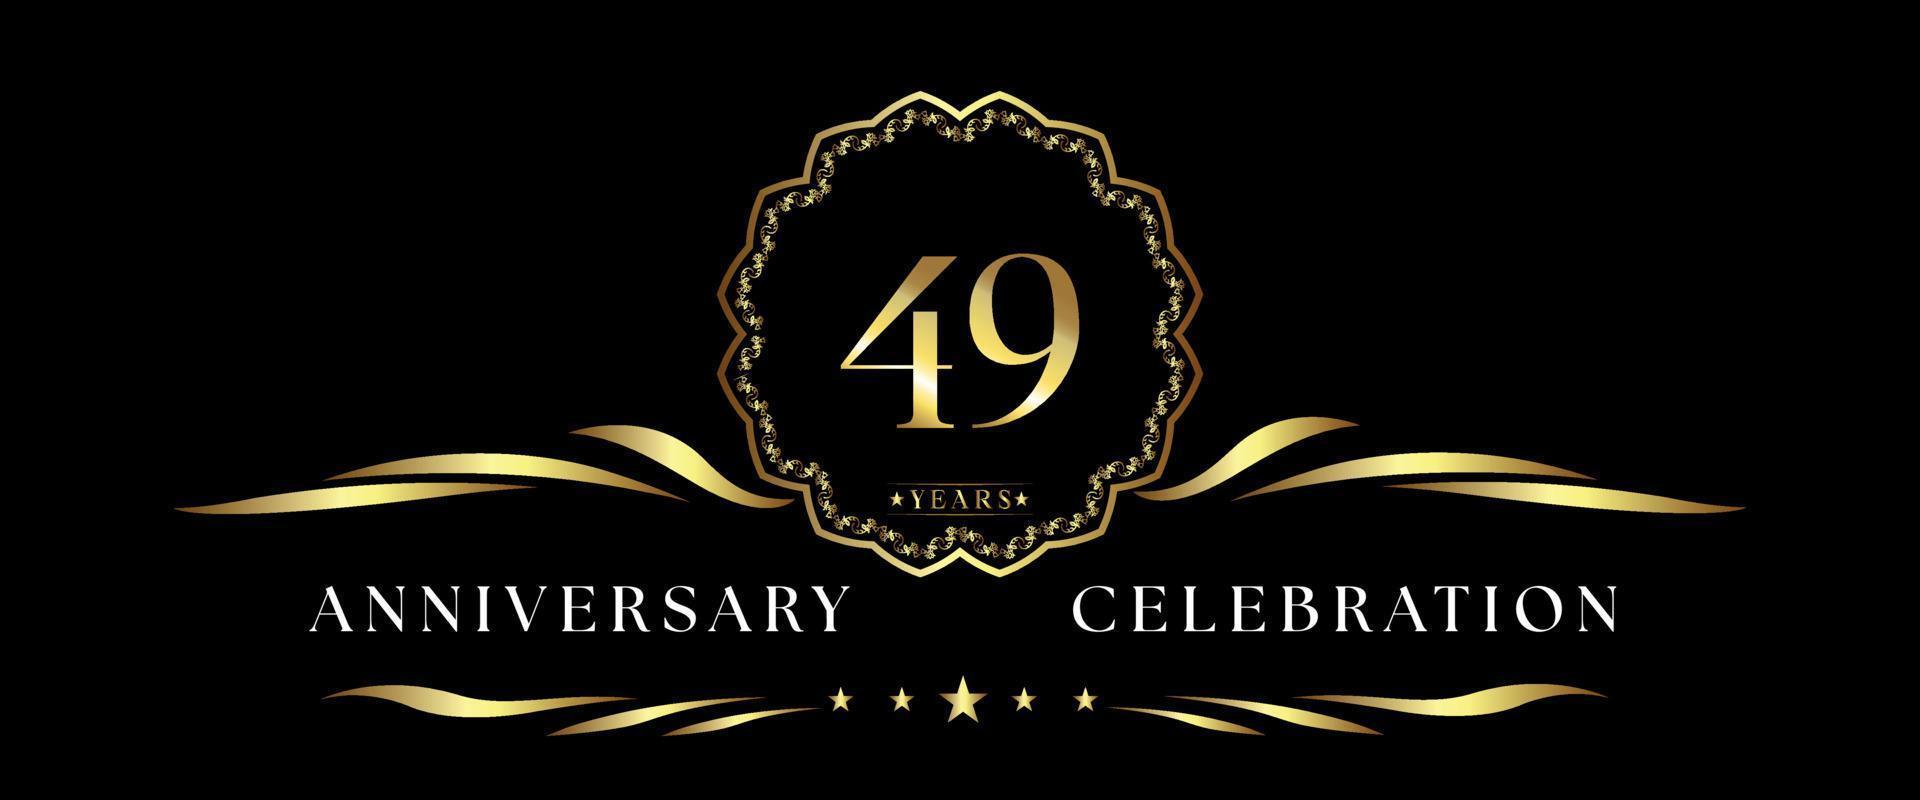 Celebrazione dell'anniversario di 49 anni con cornice decorativa dorata isolata su sfondo nero. disegno vettoriale per biglietto di auguri, festa di compleanno, matrimonio, festa evento, cerimonia. Logo dell'anniversario di 49 anni.